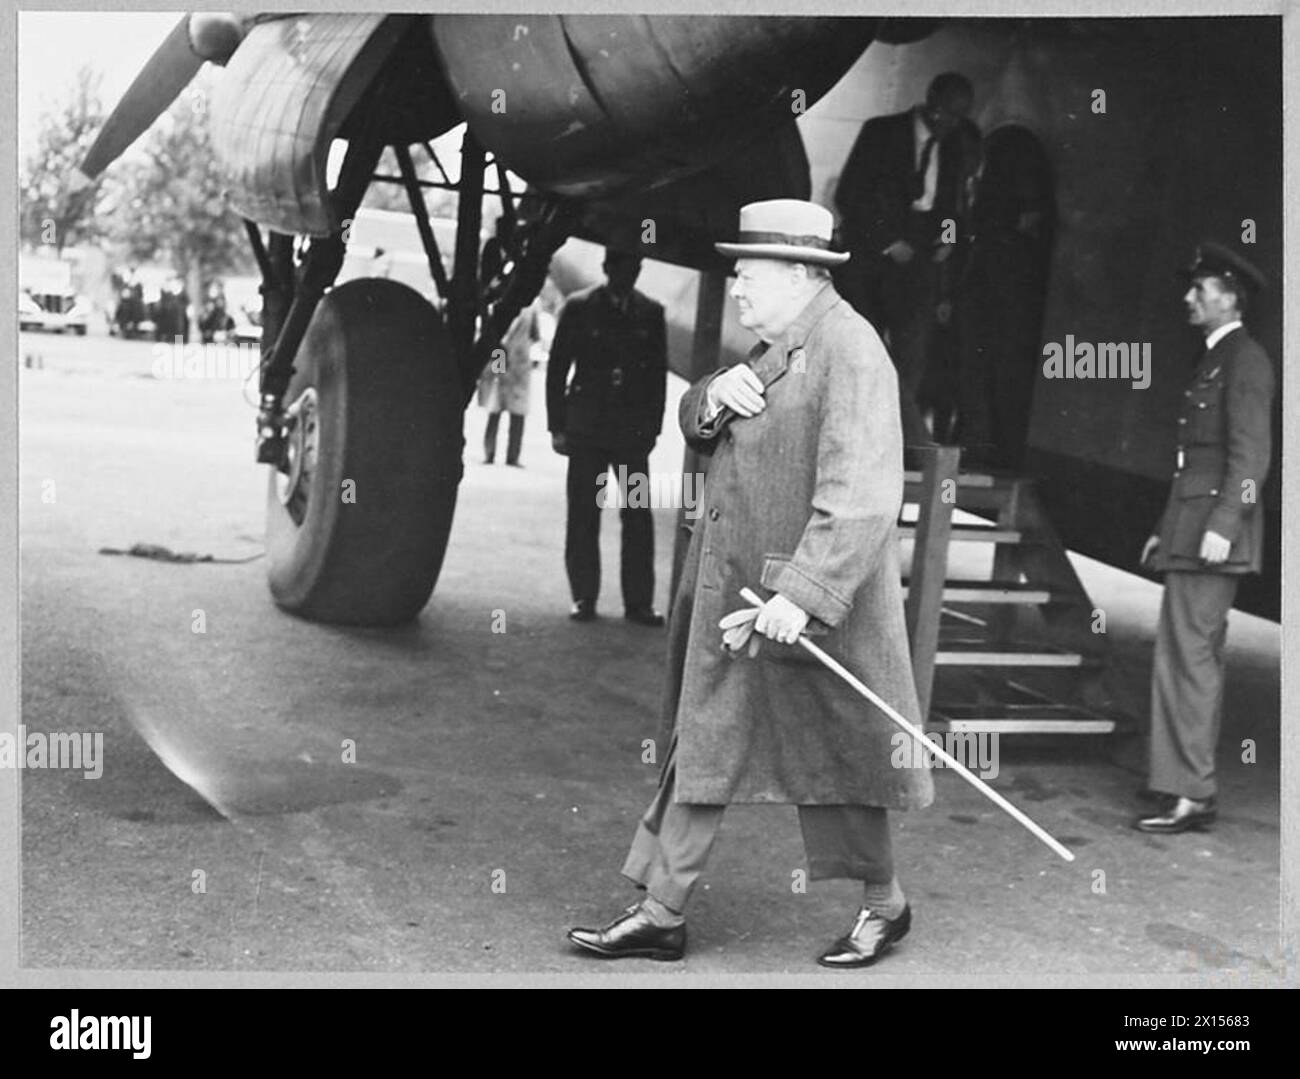 EL PRIMER MINISTRO LLEGA A INGLATERRA - A las 6,00 horas del 29 de agosto de 1944, el Sr. Winston Churchill regresó a Inglaterra después de su gira por el teatro de guerra mediterráneo, aterrizando en un aeródromo de los condados de origen desde el mismo avión del Mando de Transporte en el que había realizado el viaje de ida. Los jefes de servicio se reunieron en el aeródromo para darle la bienvenida a casa. Foto (publicada en 1944) muestra - El Primer Ministro caminando desde el avión que lo llevó de vuelta a la Real Fuerza Aérea de Inglaterra Foto de stock